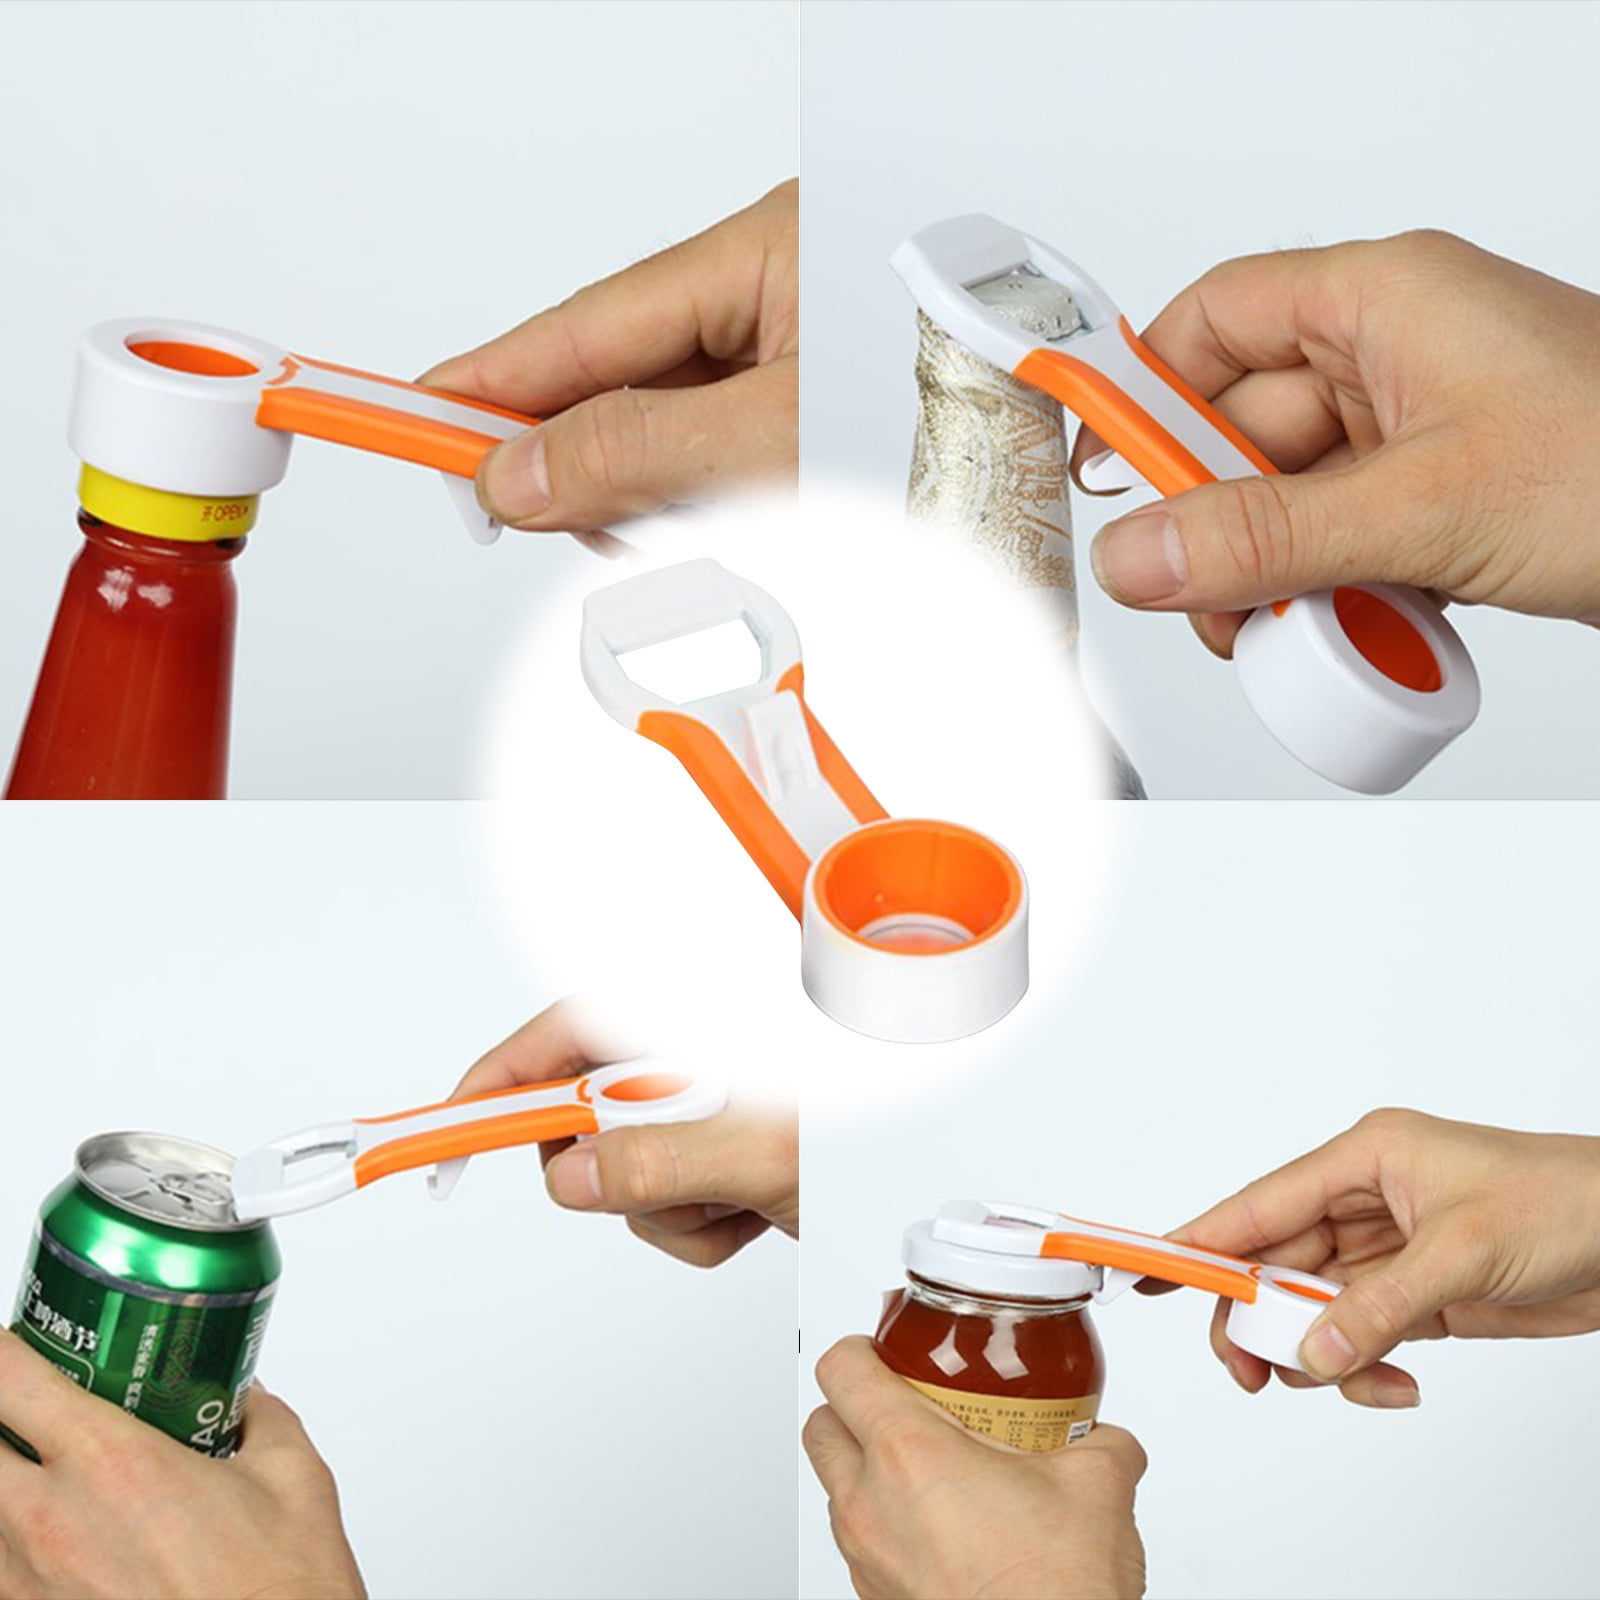 Jar Opener Rubber 4 In 1 Quick Lid Bottle Cap Grip Twister Remover